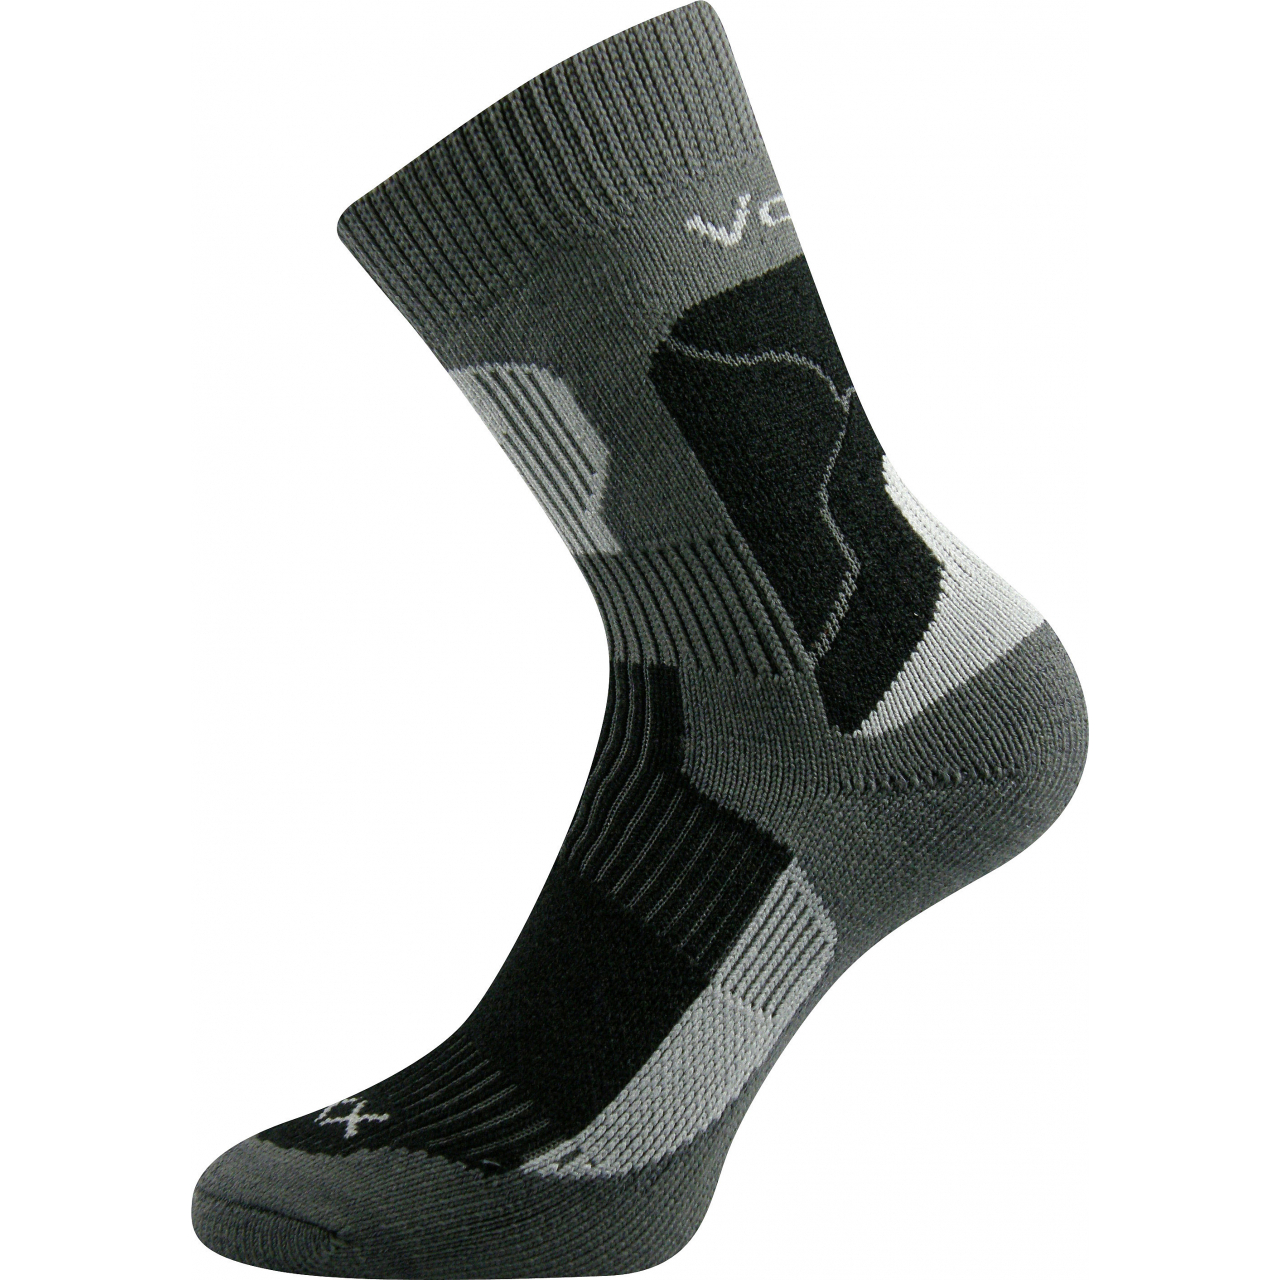 Ponožky unisex termo Voxx Treking - tmavě šedé-černé, 35-37